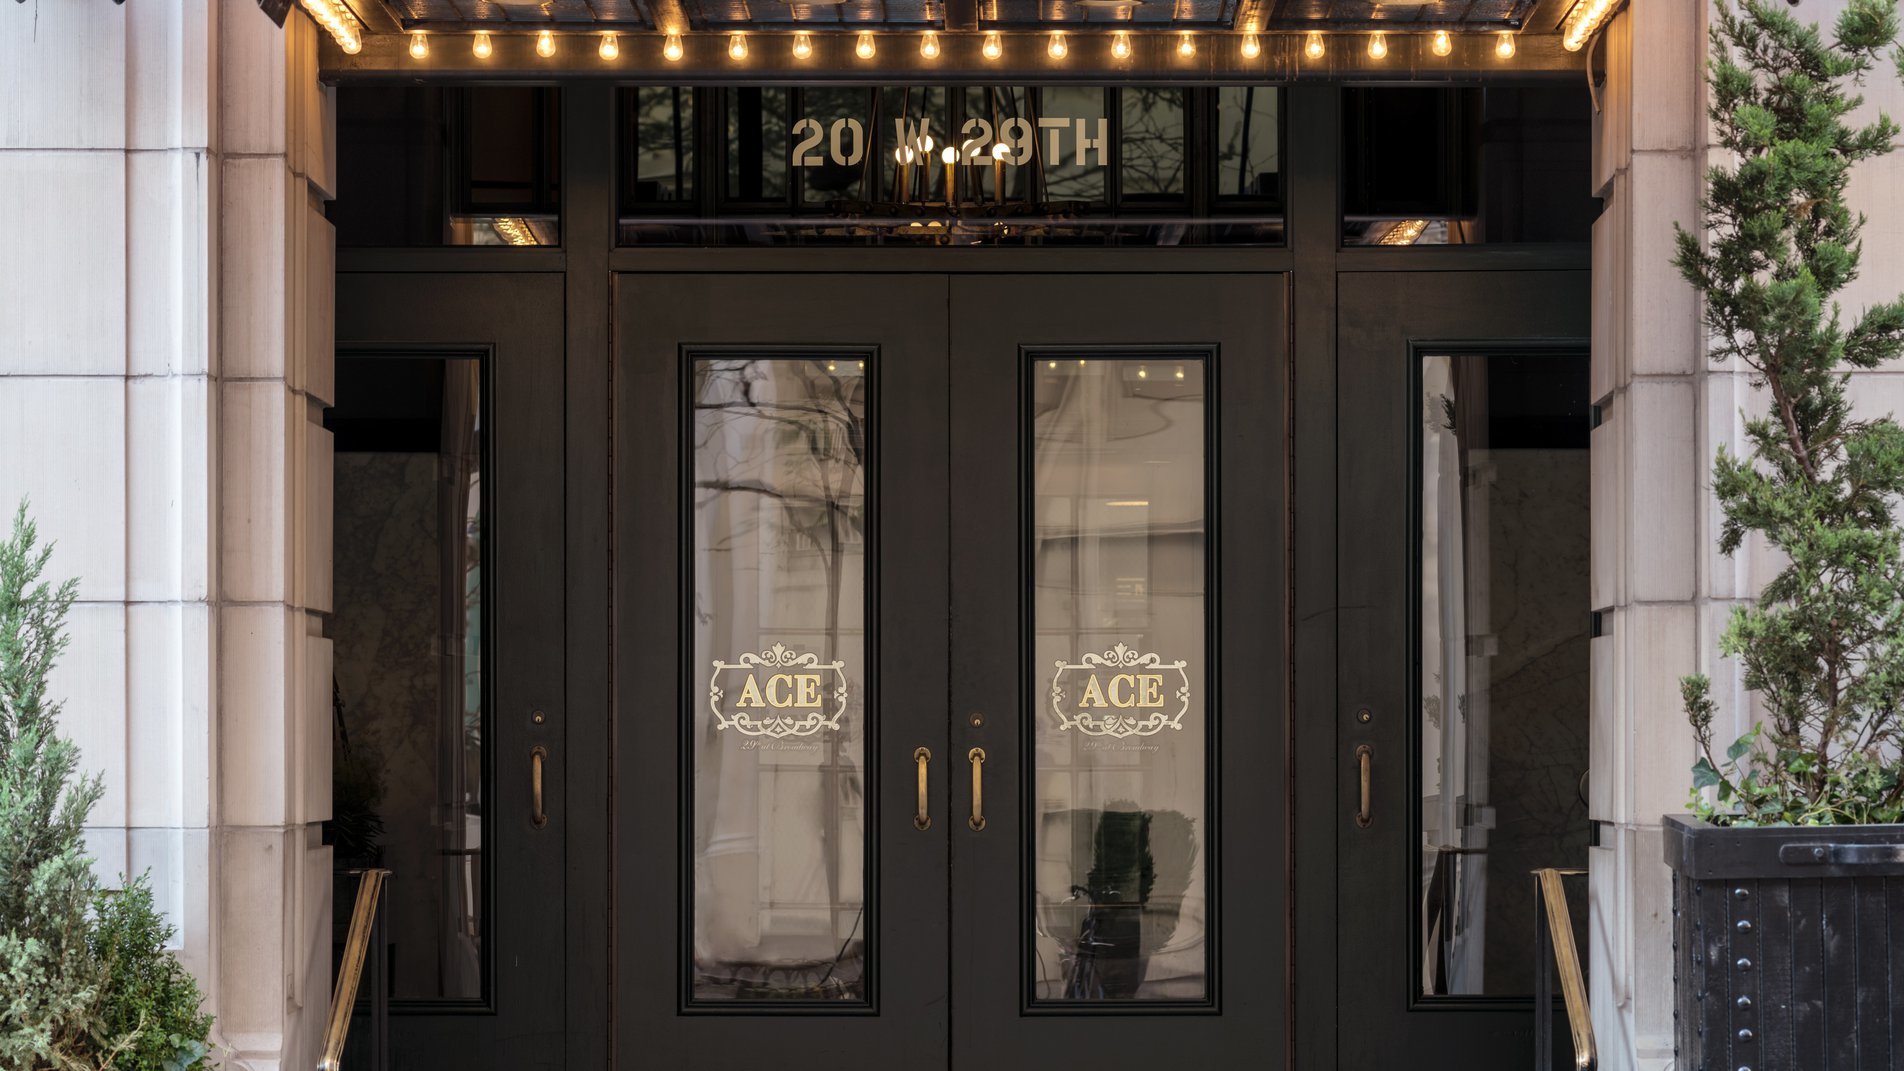 Photo of Ace Hotel New York, New York, NY